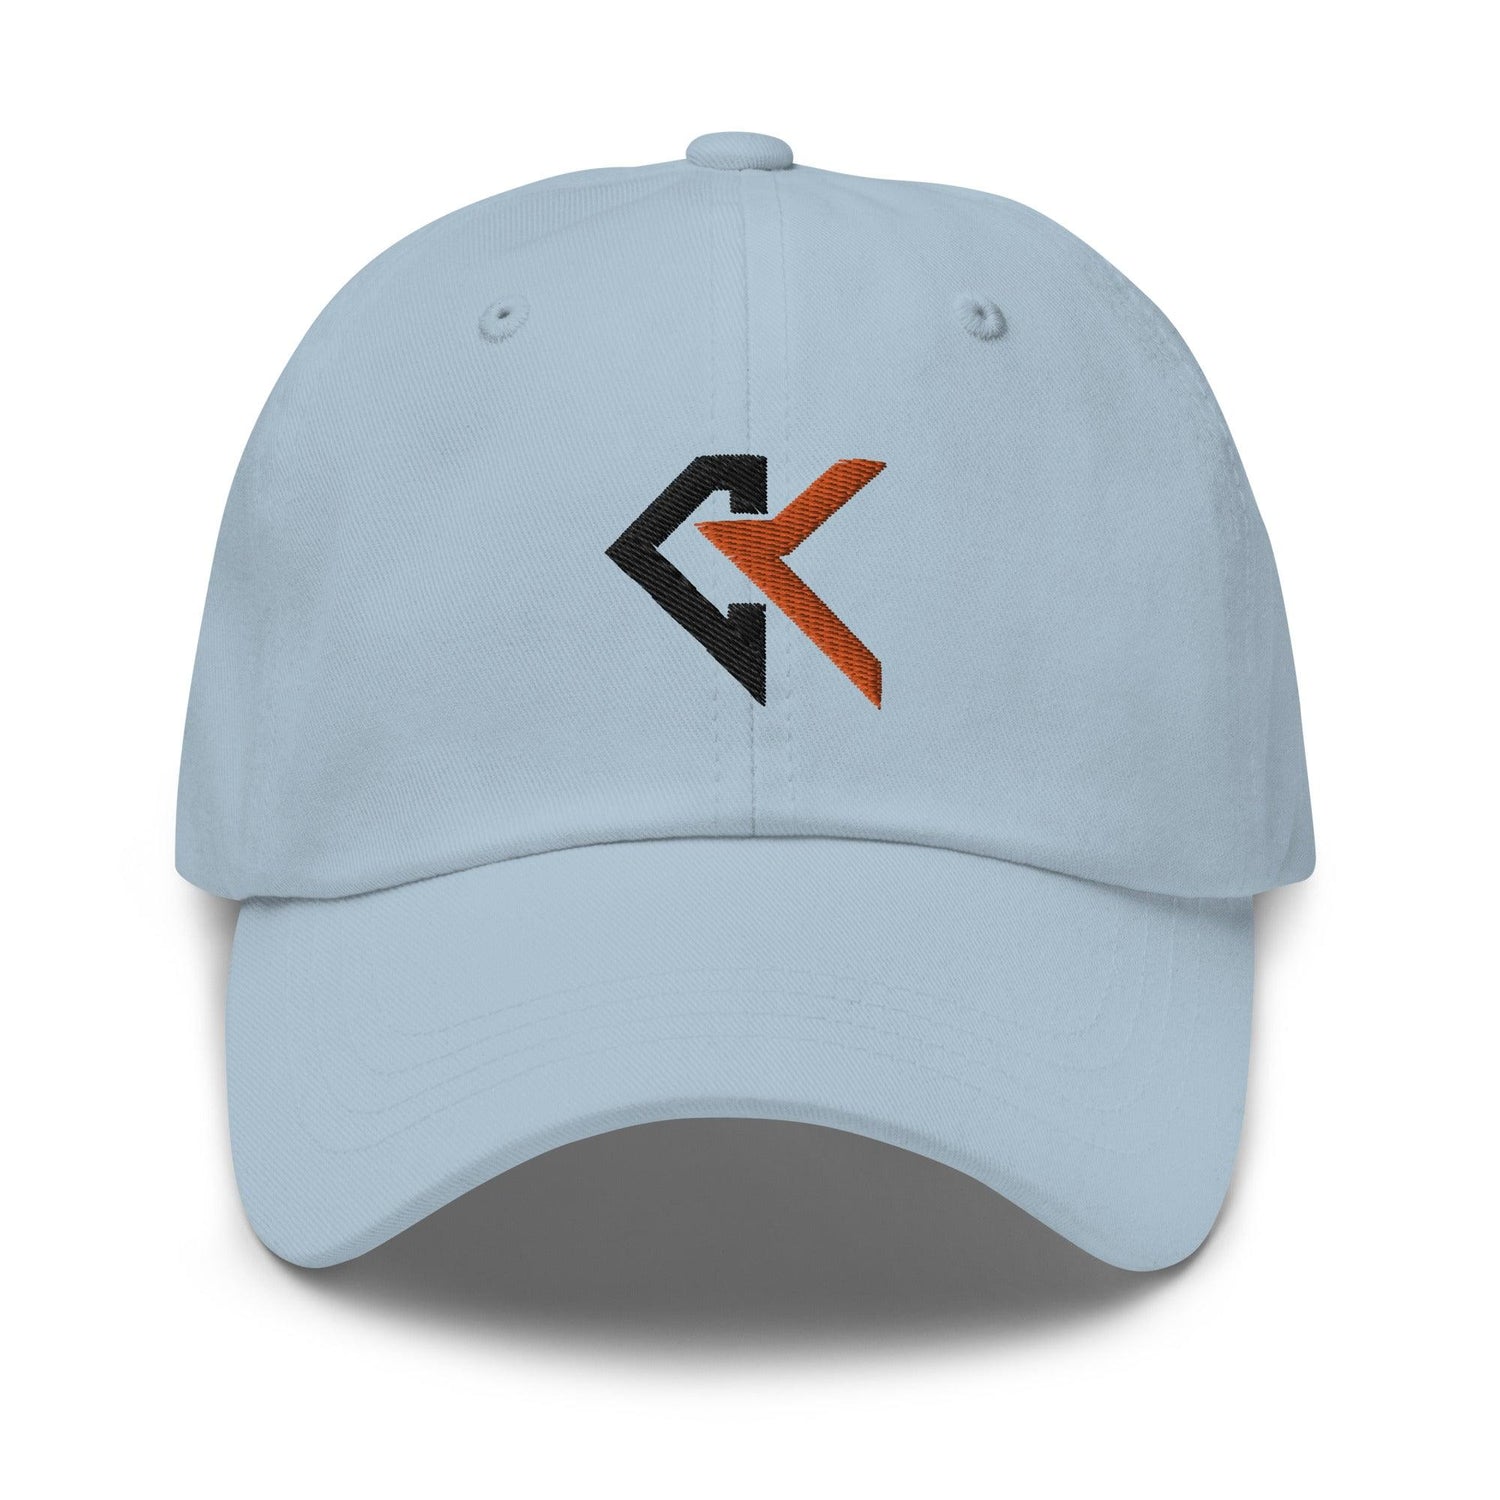 Cade Kuehler “CK” hat - Fan Arch